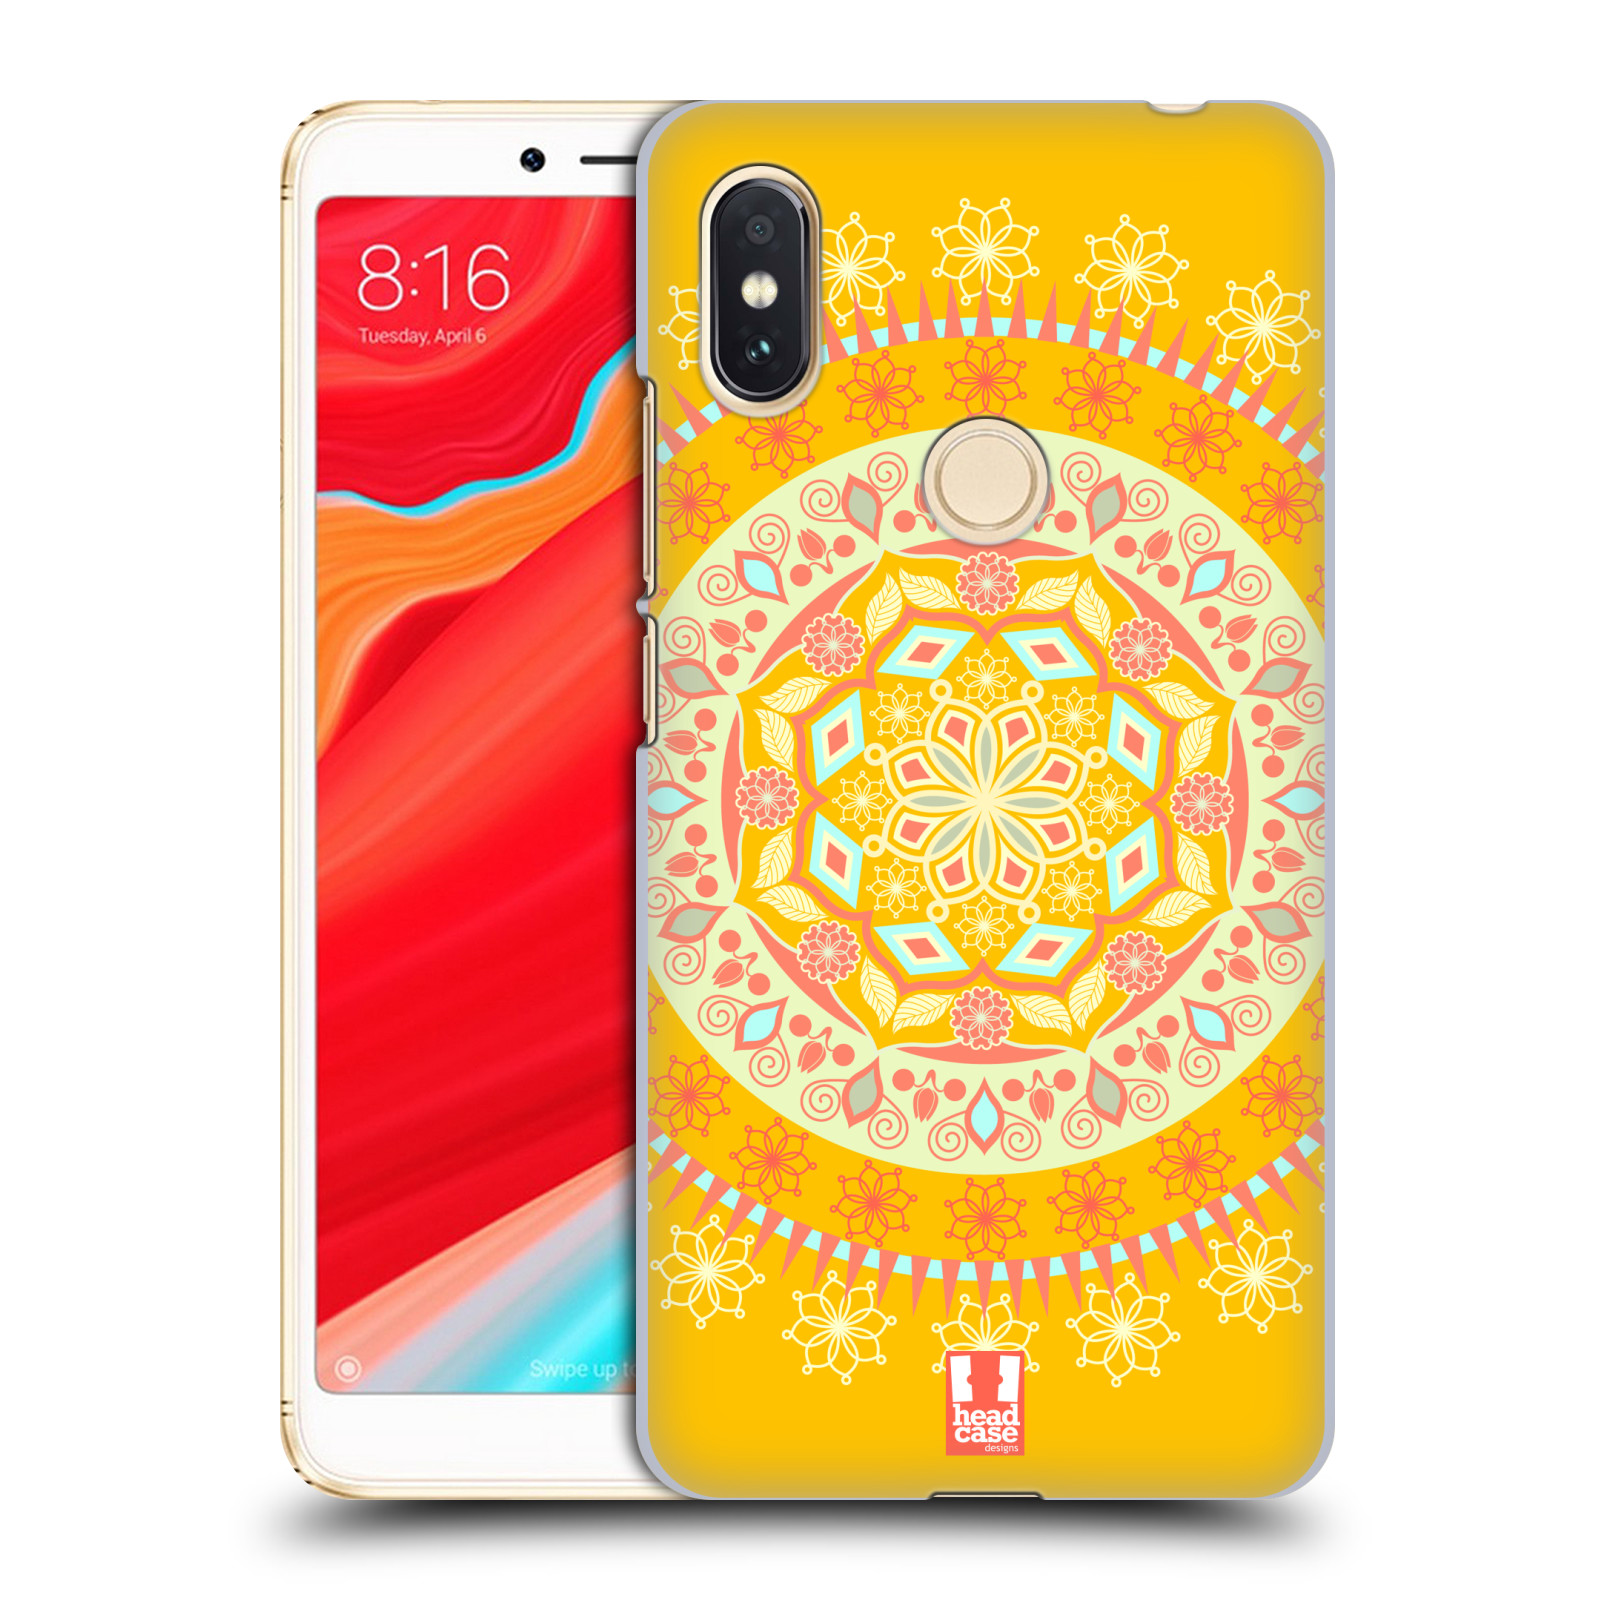 HEAD CASE plastový obal na mobil Xiaomi Redmi S2 vzor Indie Mandala slunce barevný motiv ŽLUTÁ